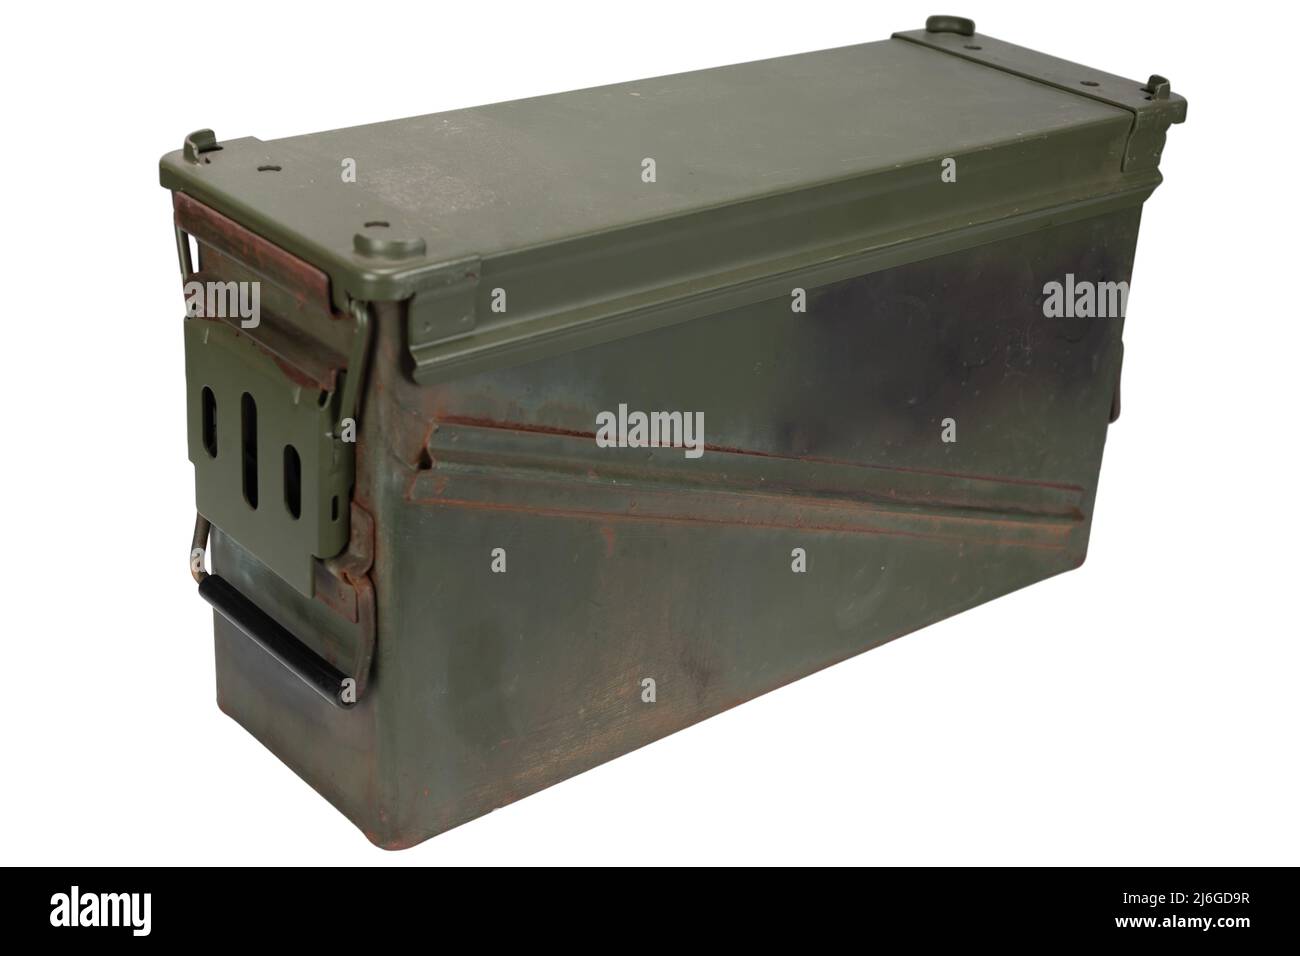 AMMO CAN pour 40mm grenades cartidge isolé sur fond blanc Banque D'Images